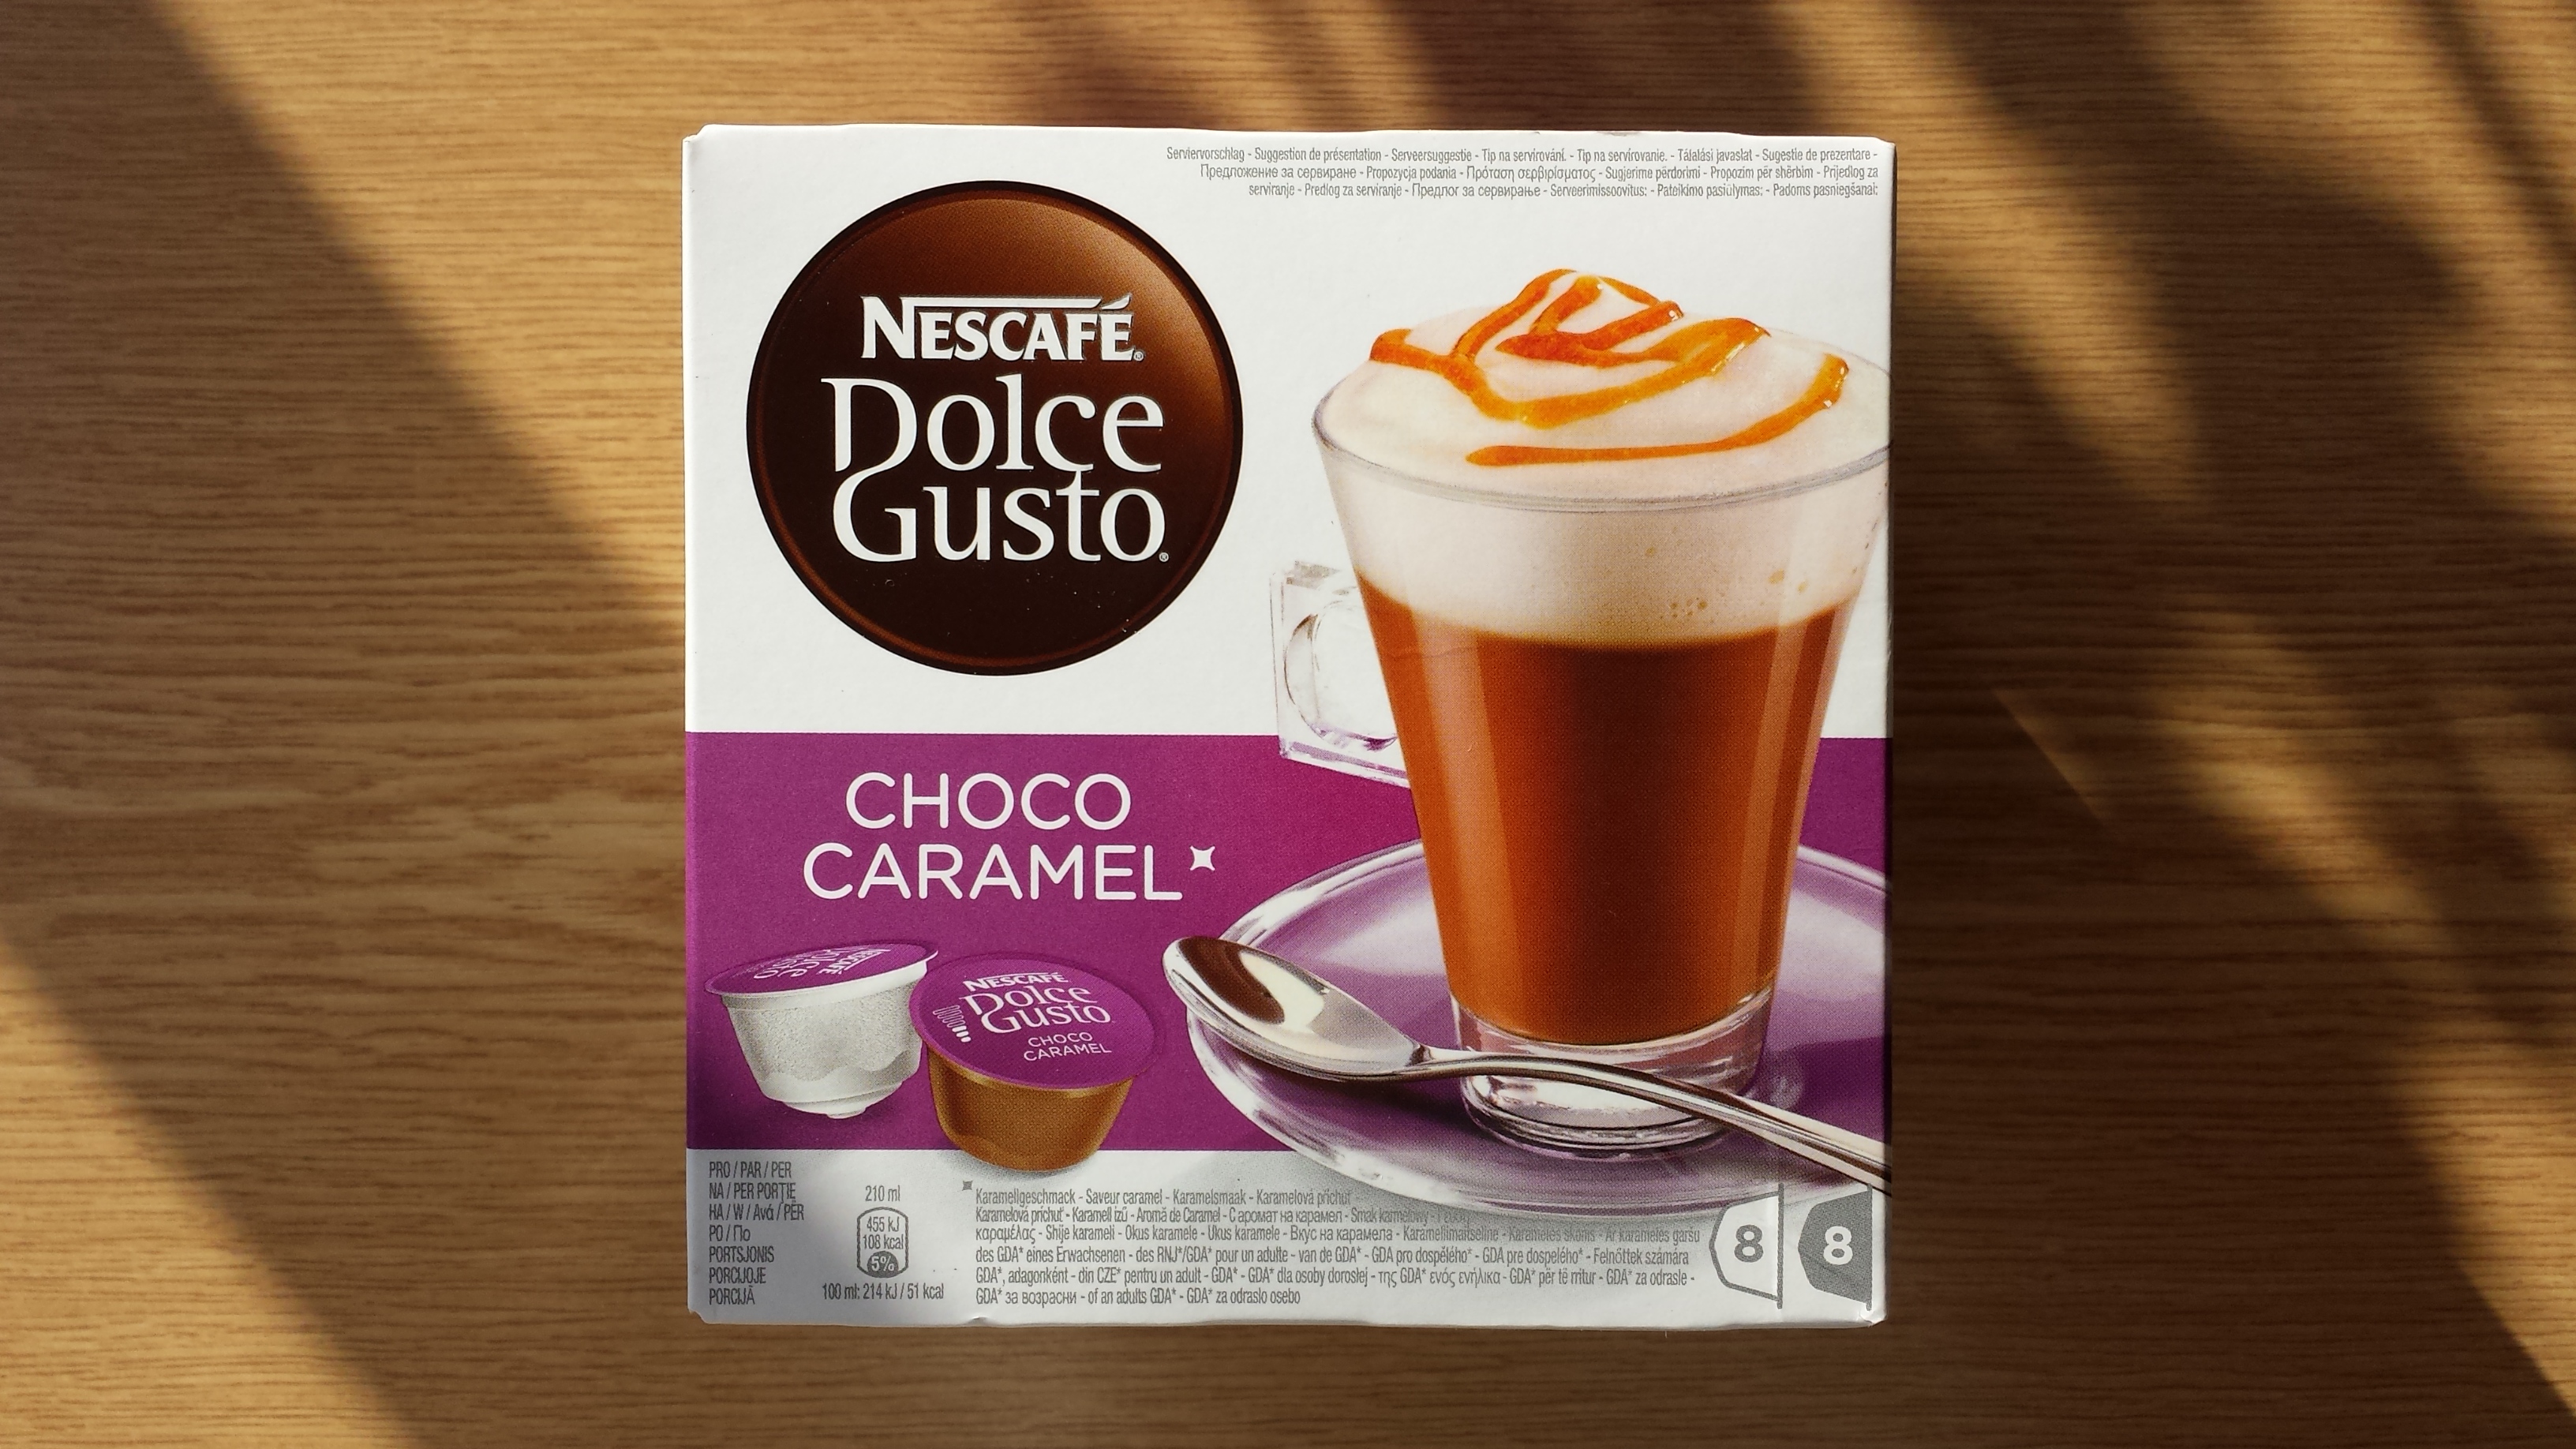 Ansprechende Verpackung: Nescafé Dolce Gusto Choco Caramel